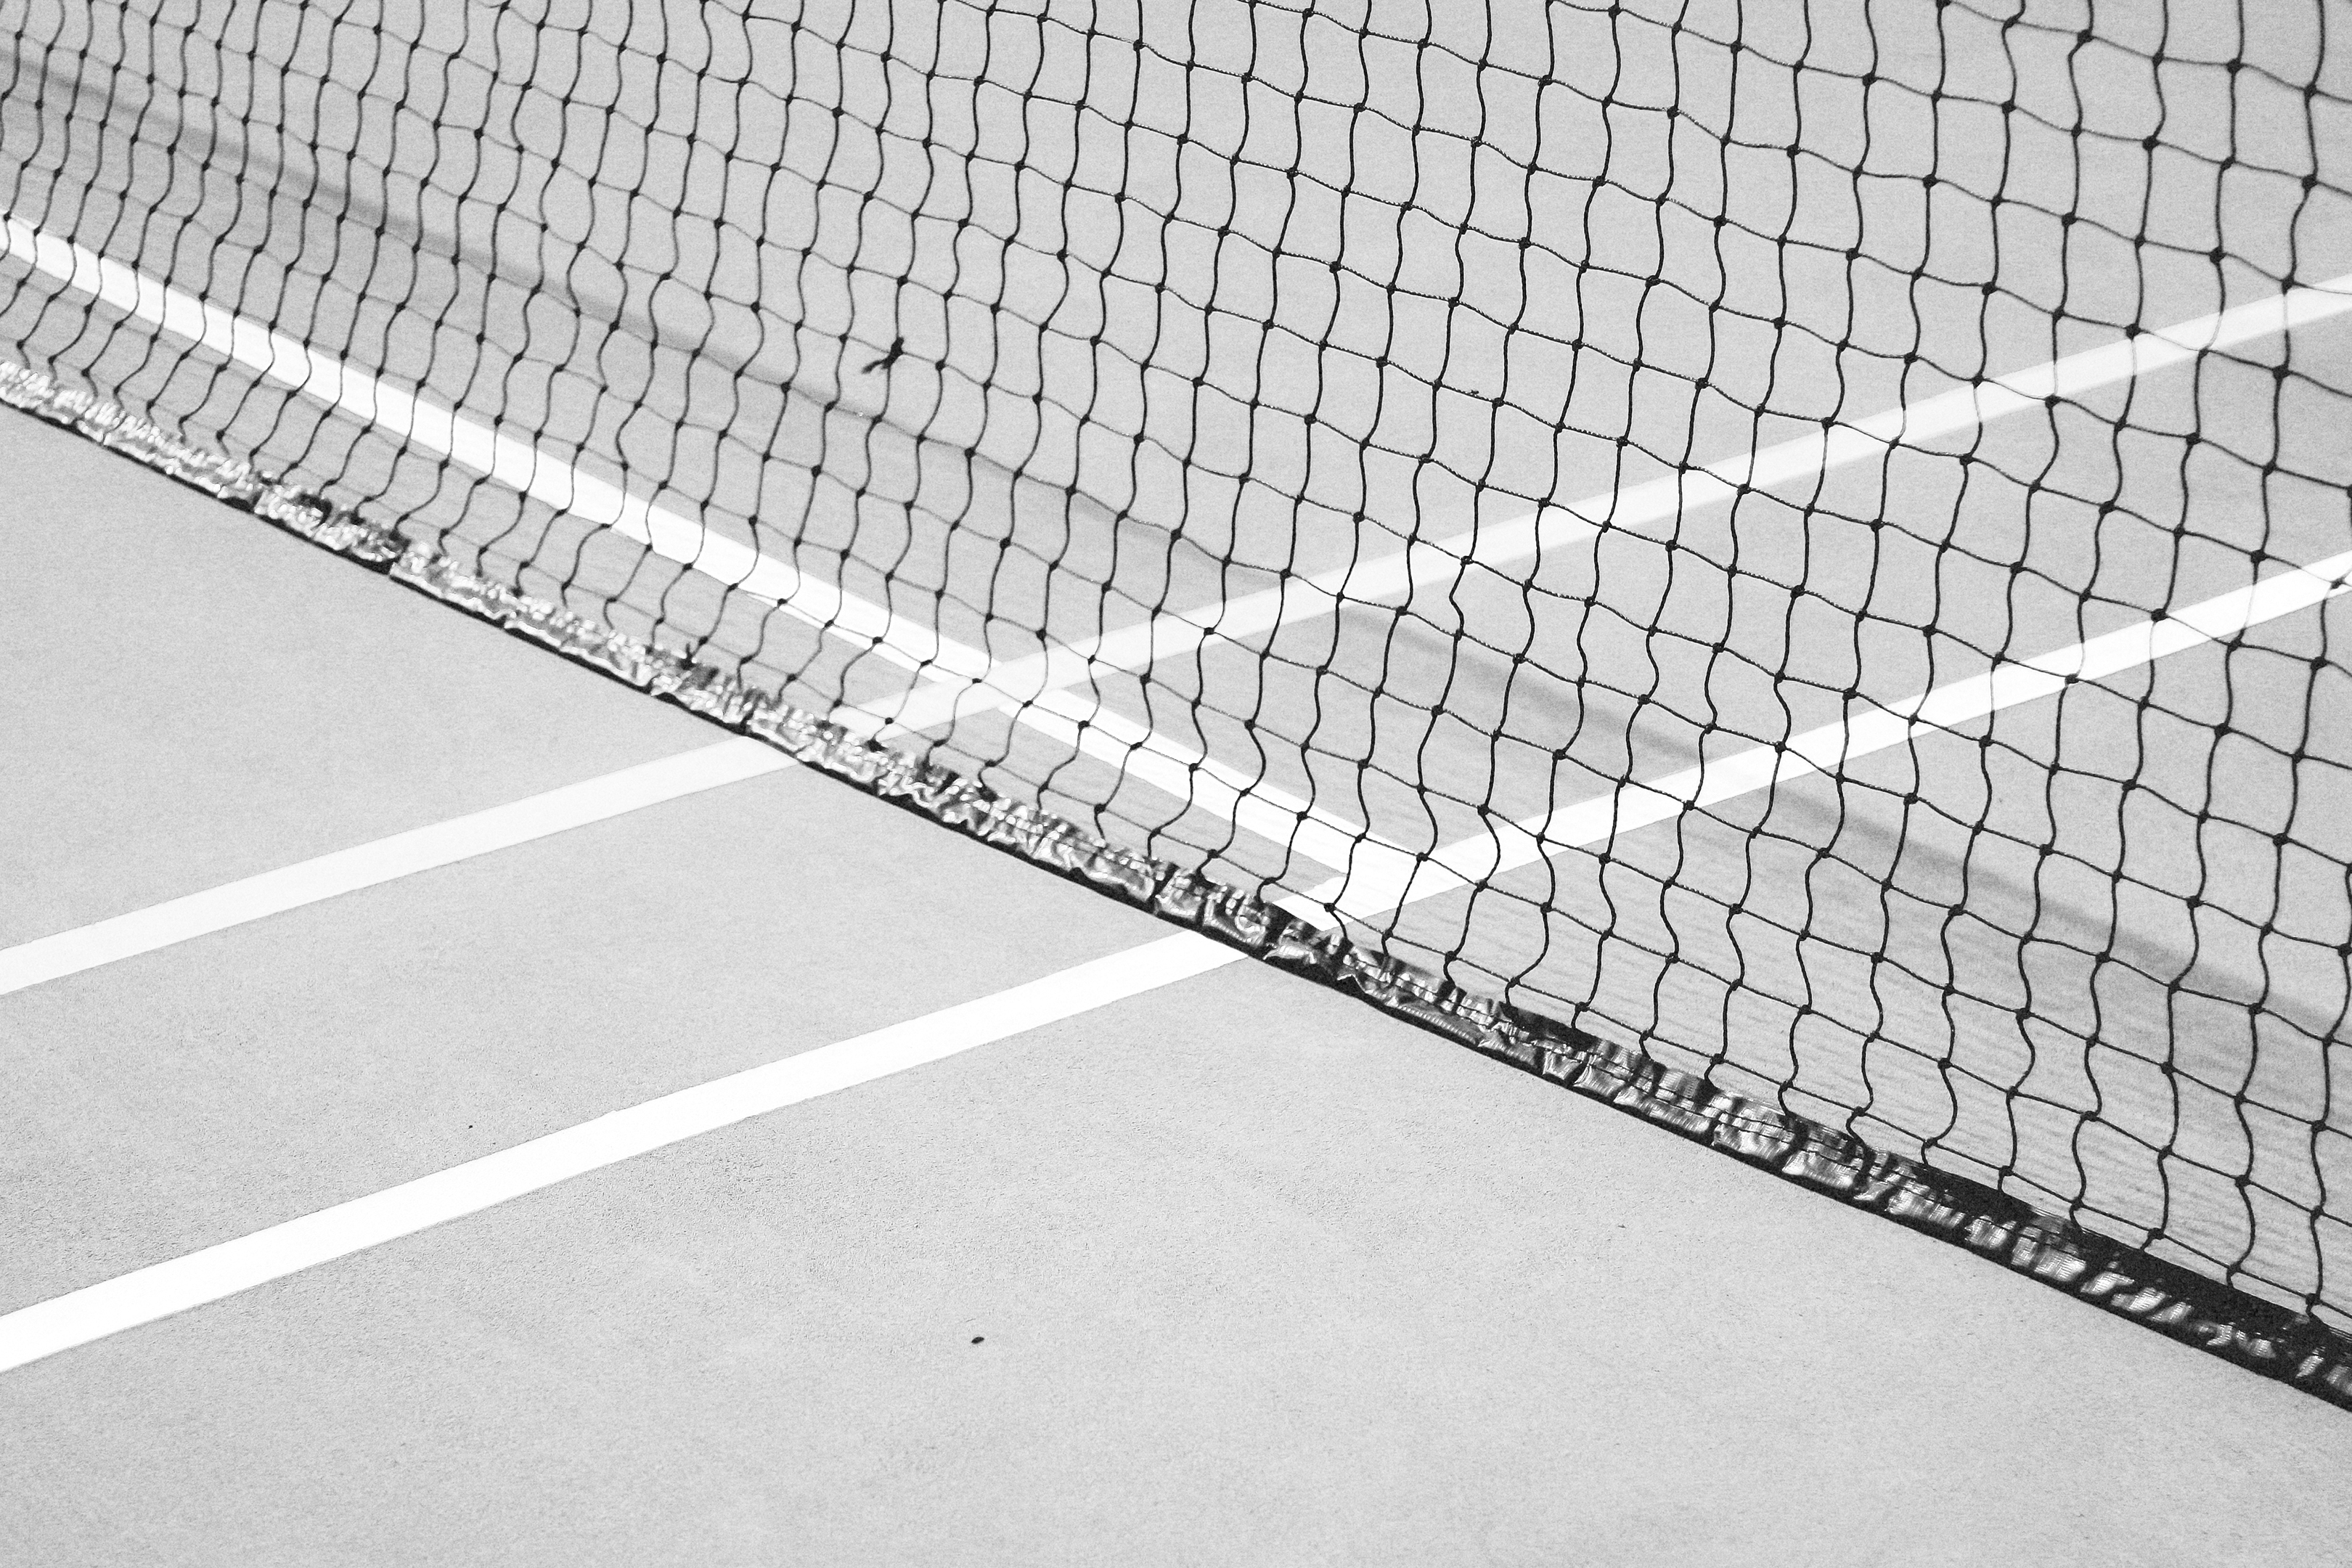 Tennis net closeup